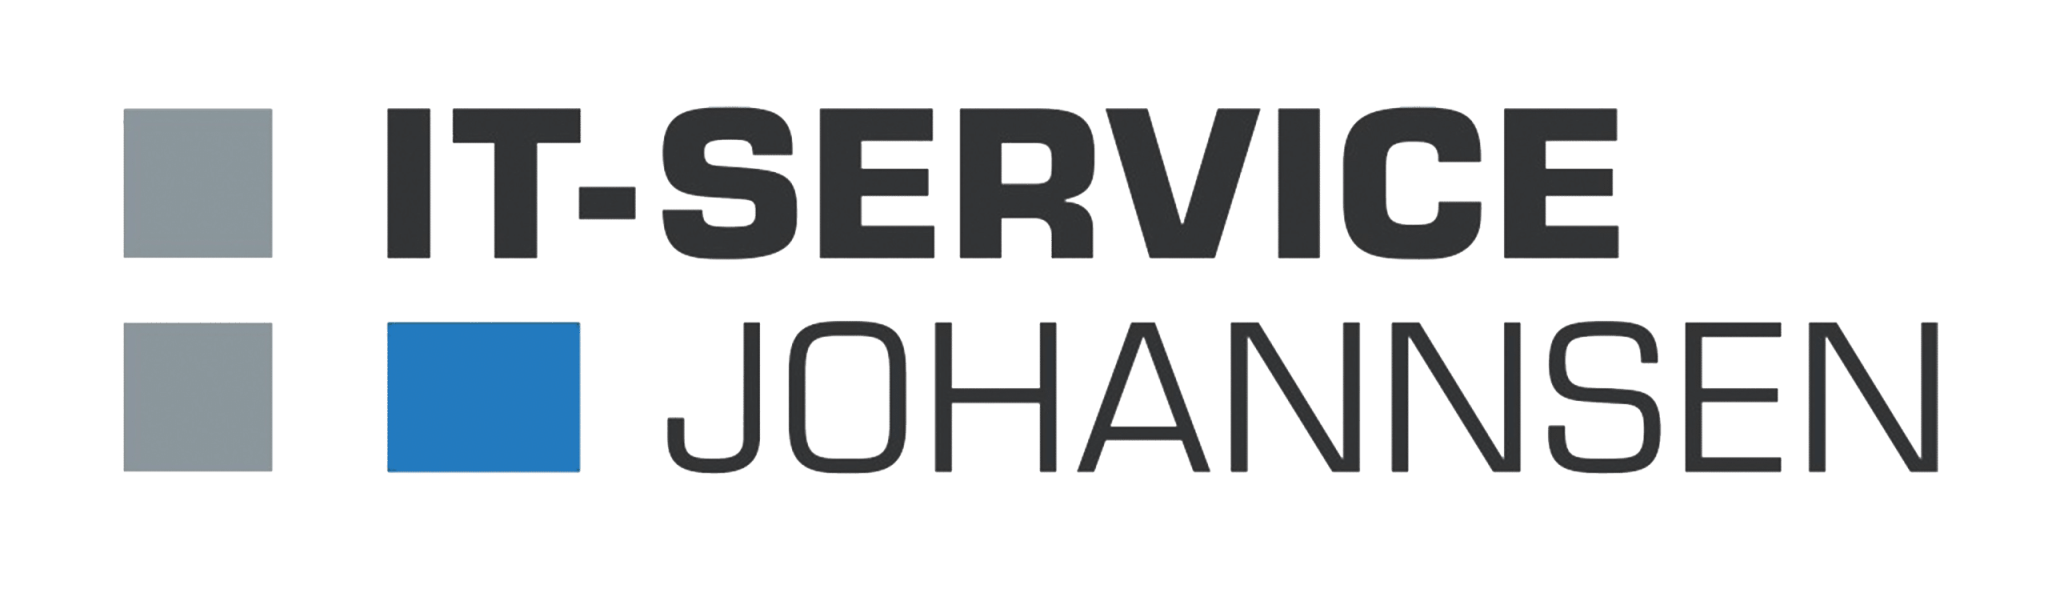 IT-Service Johannsen